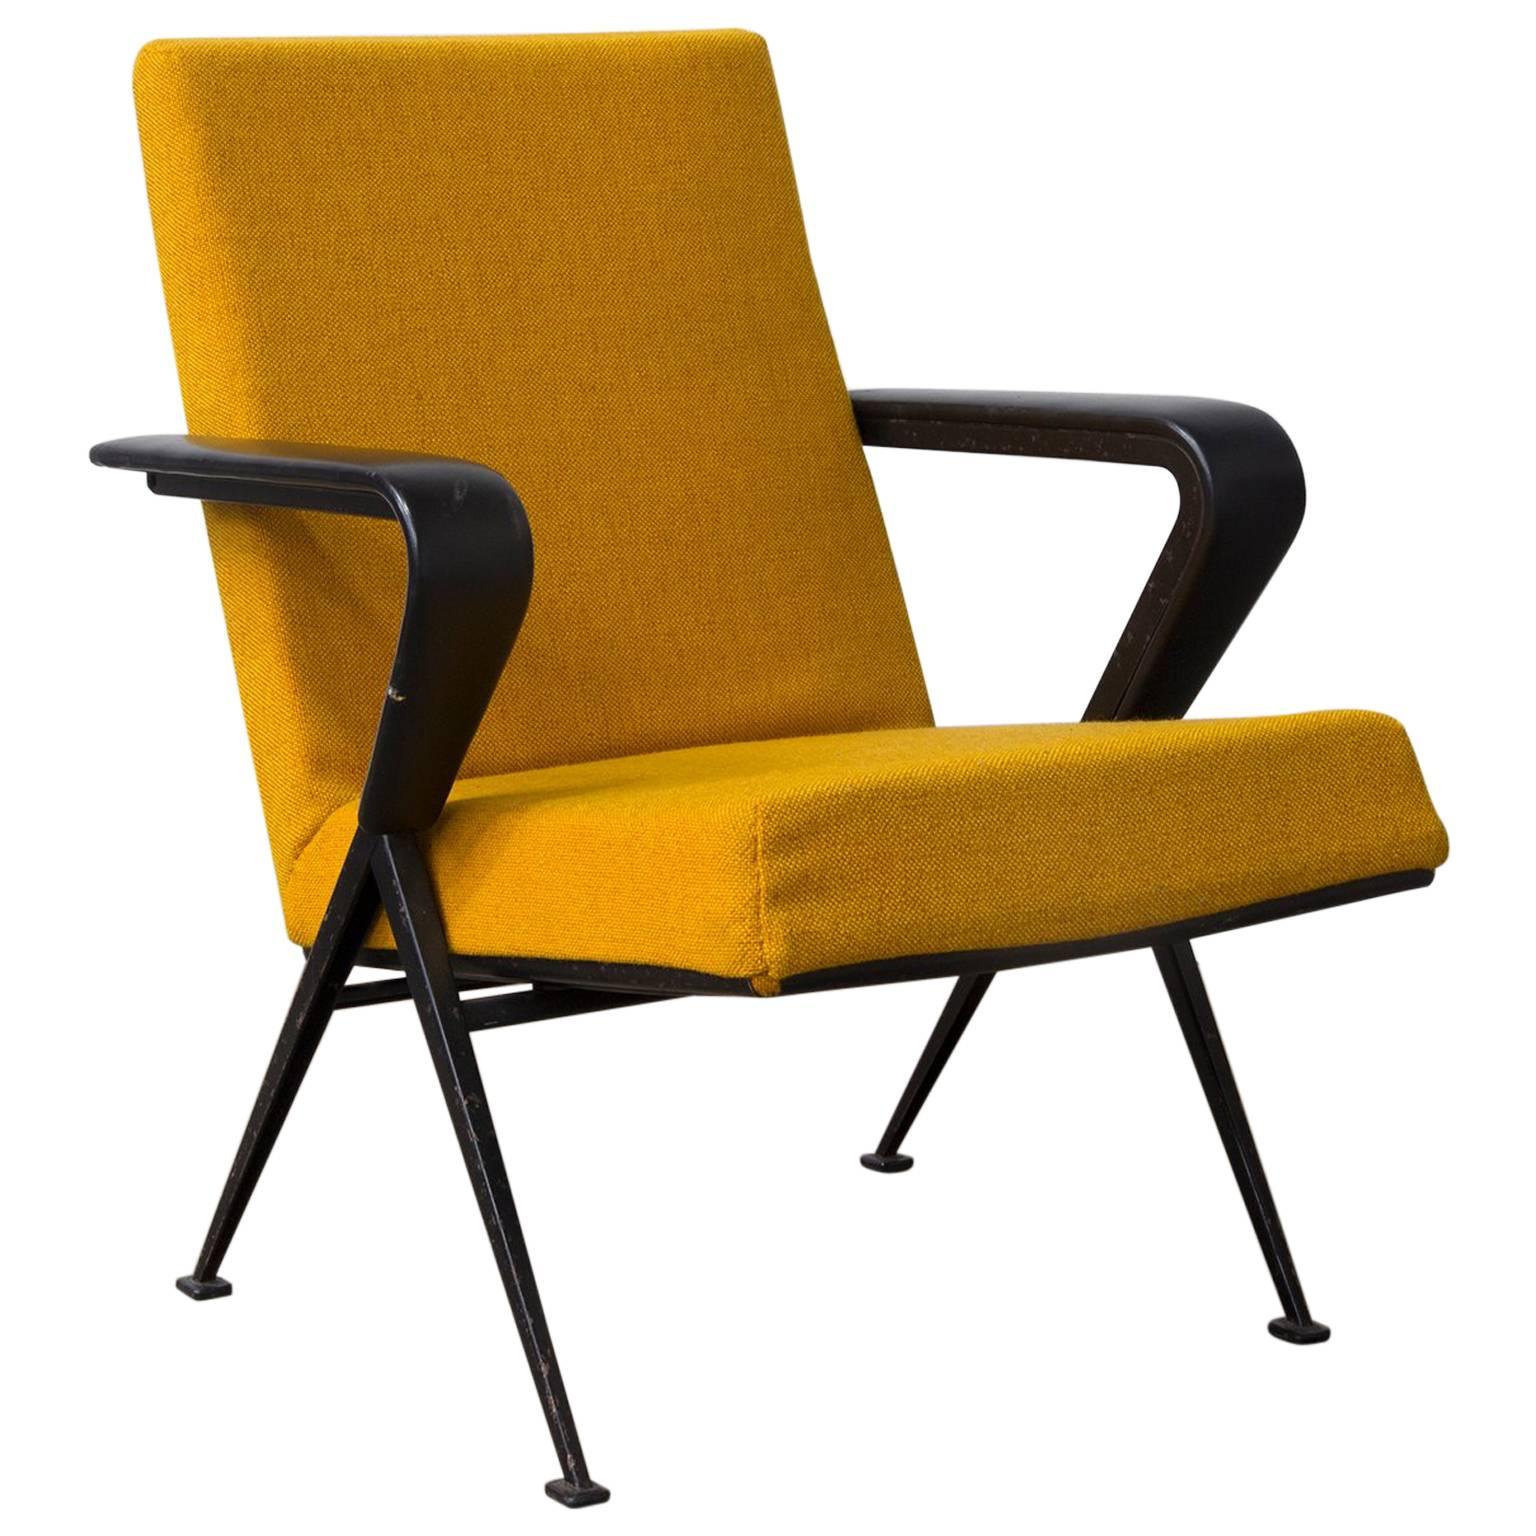 1969 Friso Kramer, Ahrend de Cirkel Repose Lounge Armchair New Yellow Upholstery